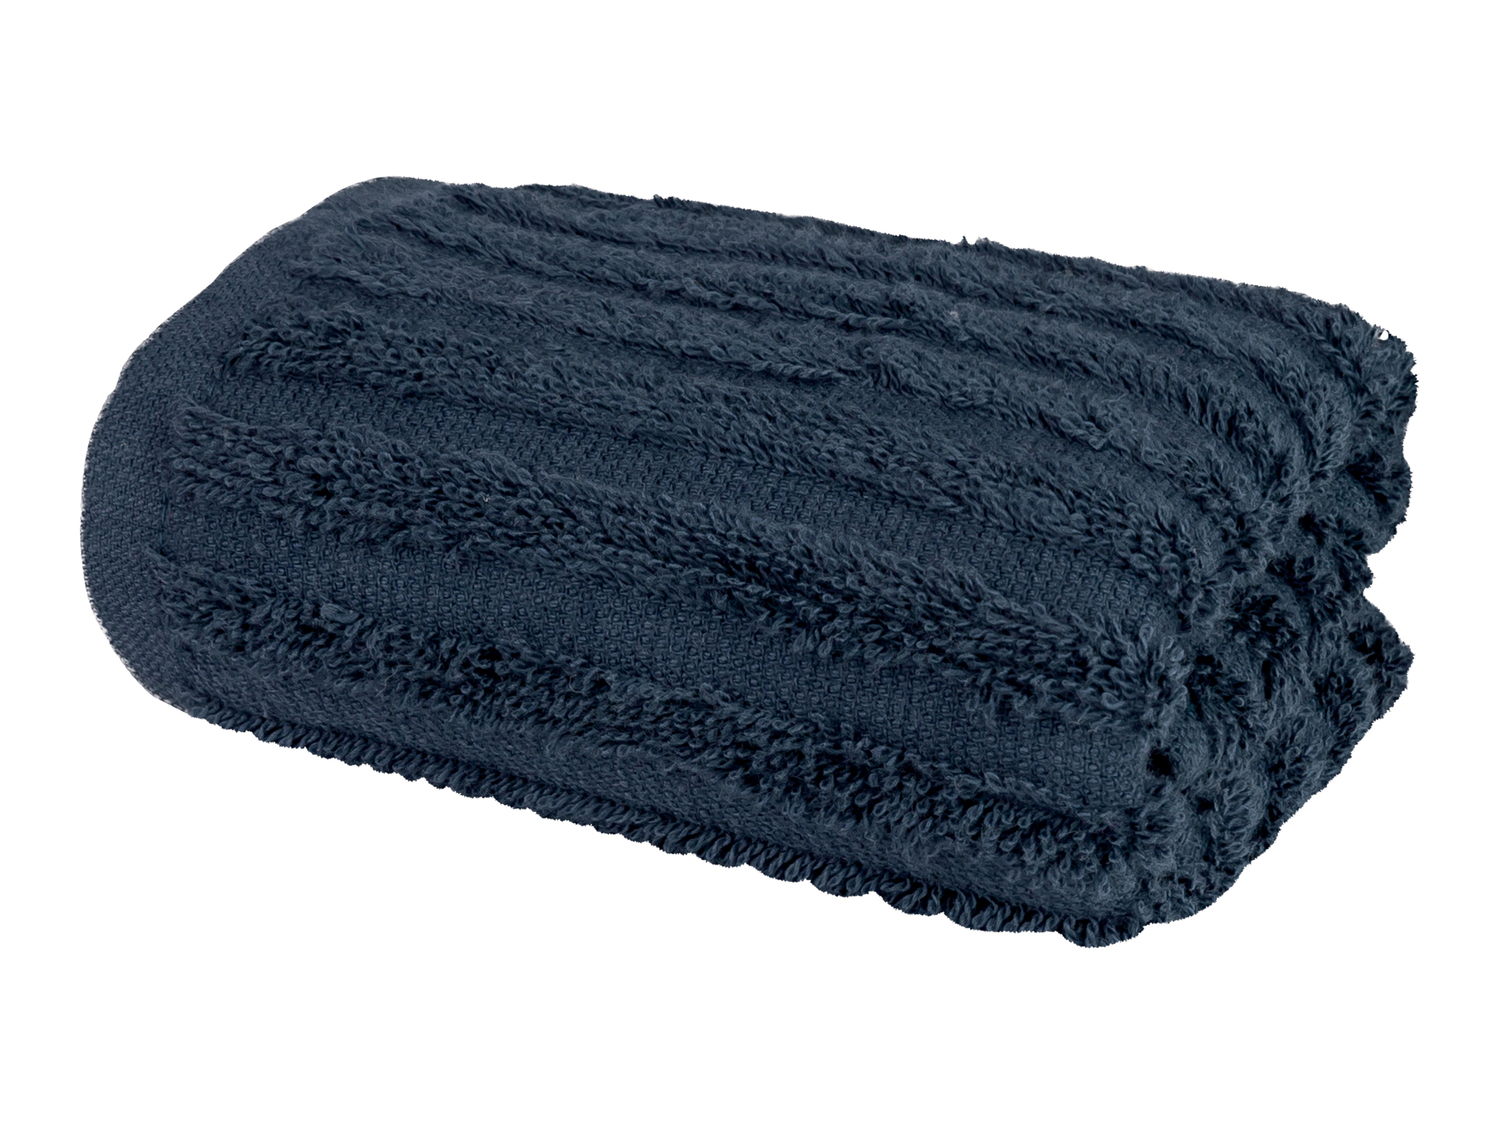 Asciugamano Miomare, prezzo 3.49 &#8364; 
30 x 50 cm - 4 pezzi 
- In cotone ...